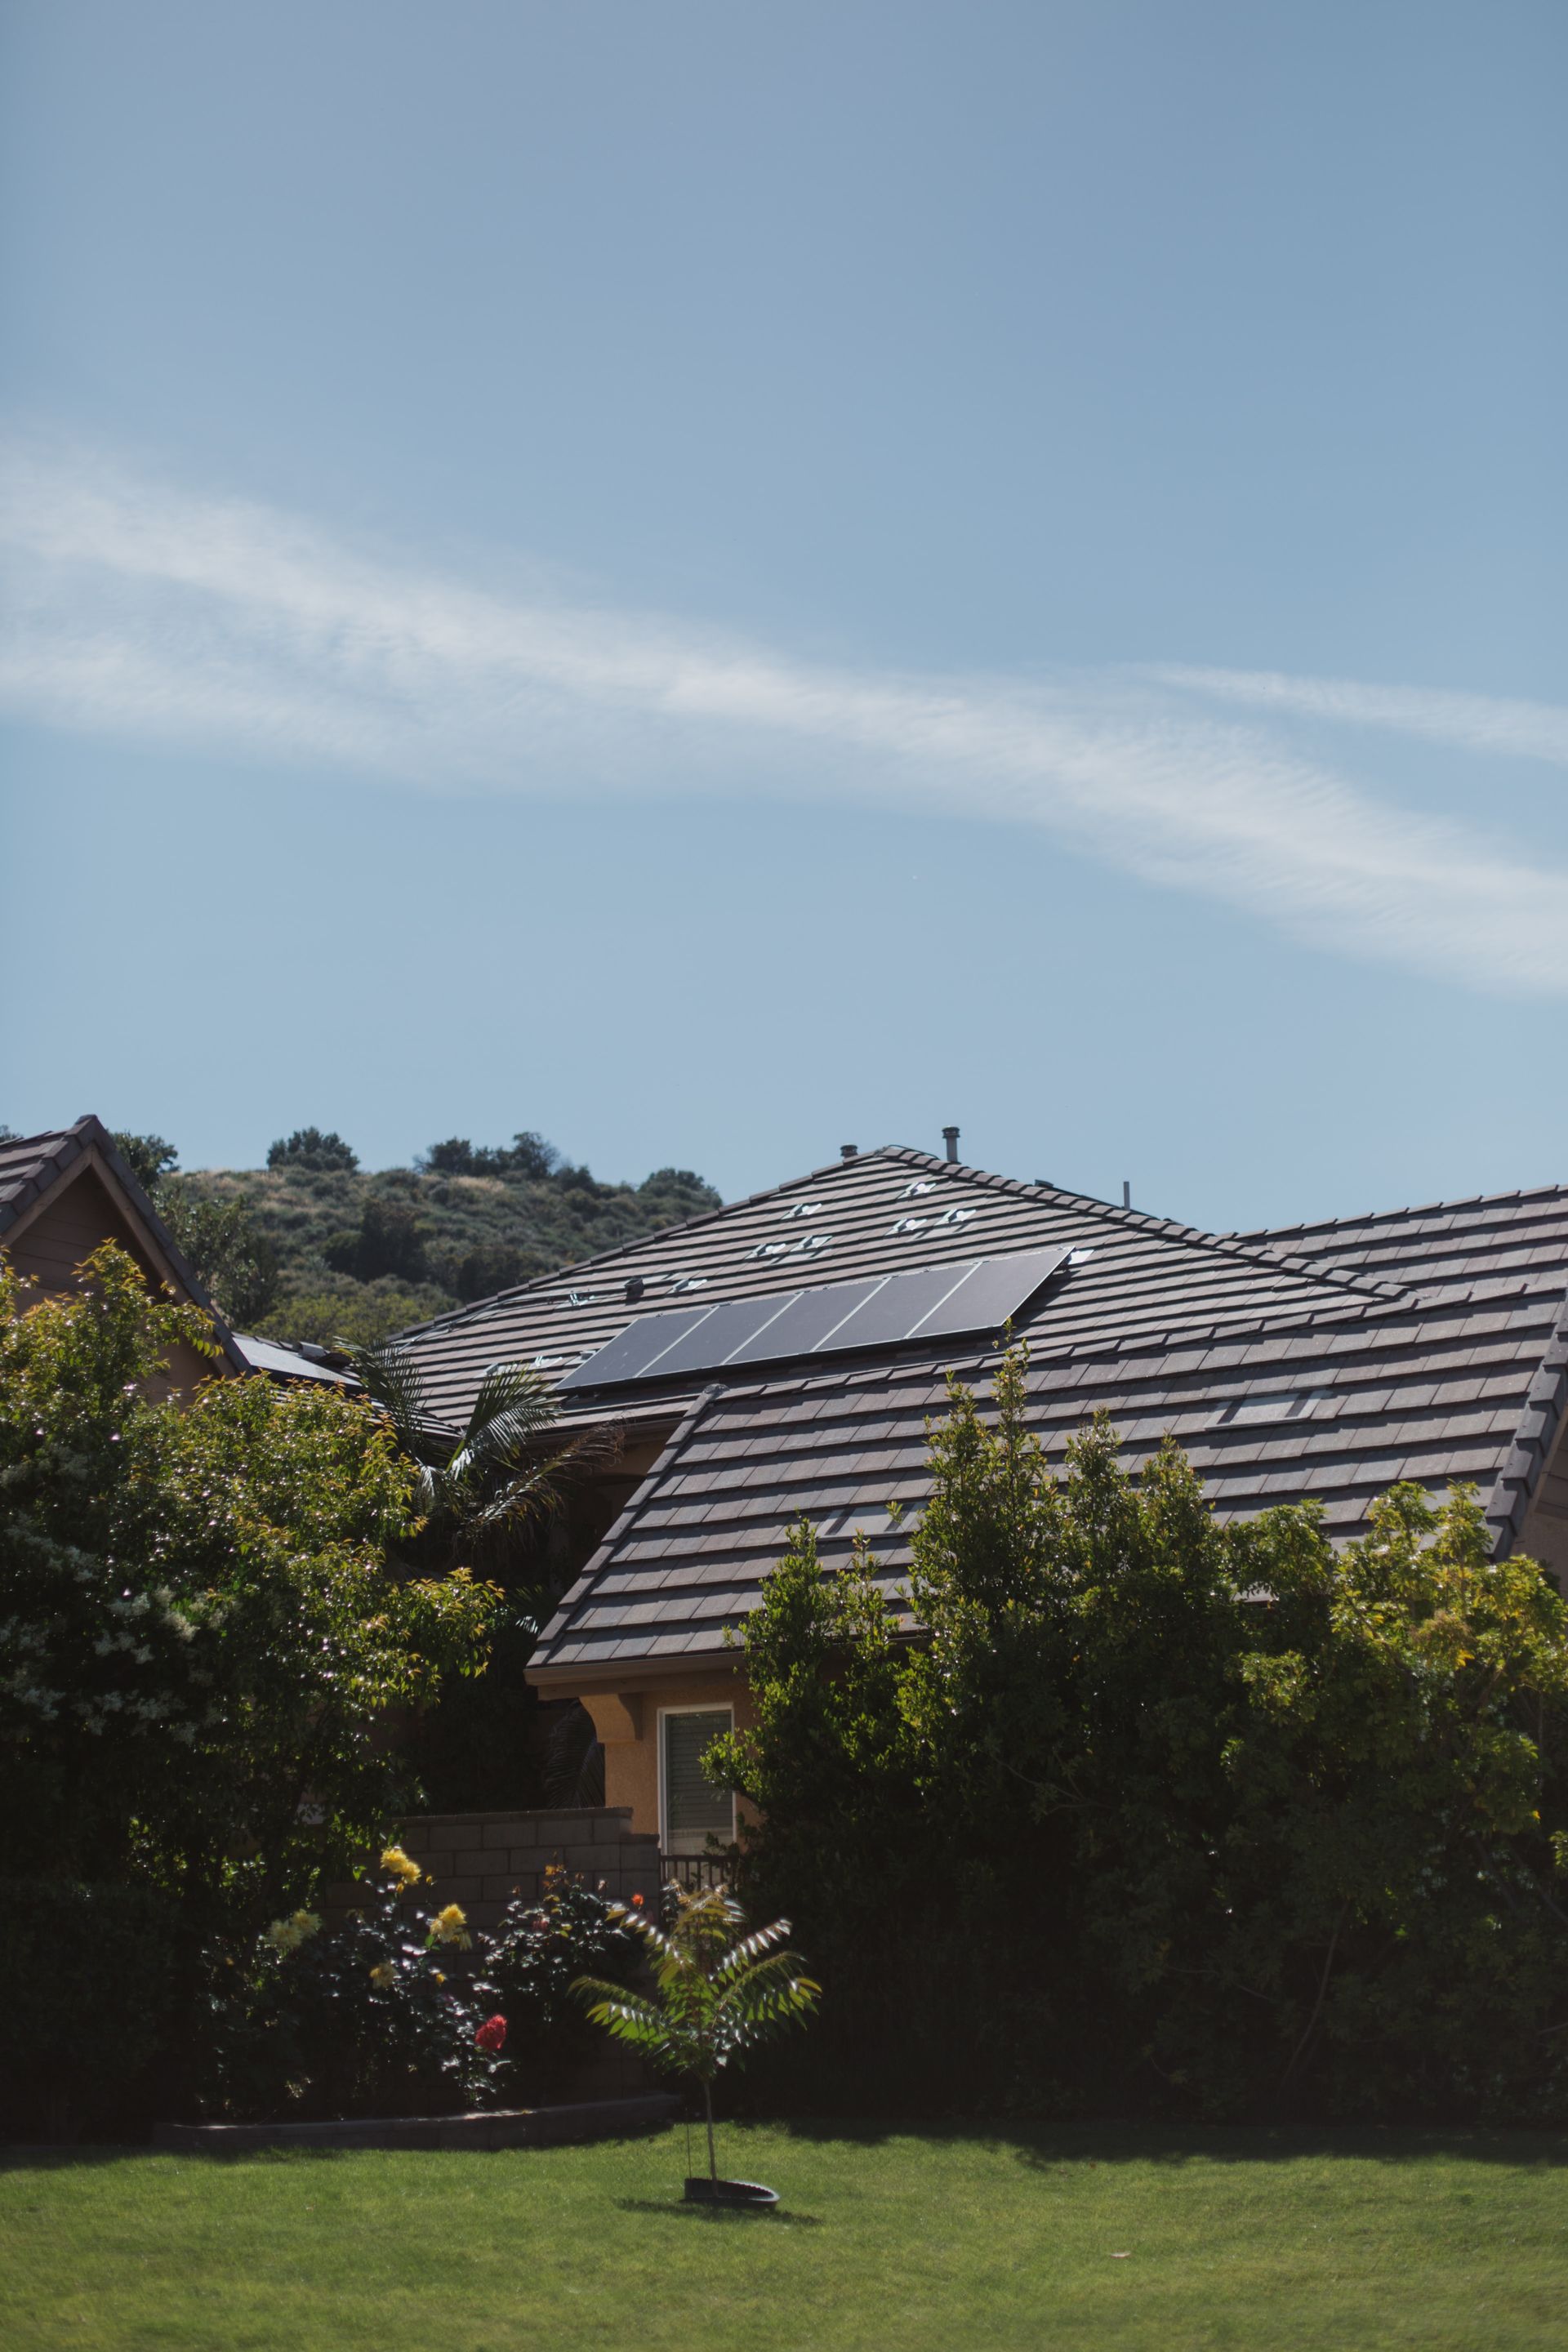 Panneaux solaires sur toit